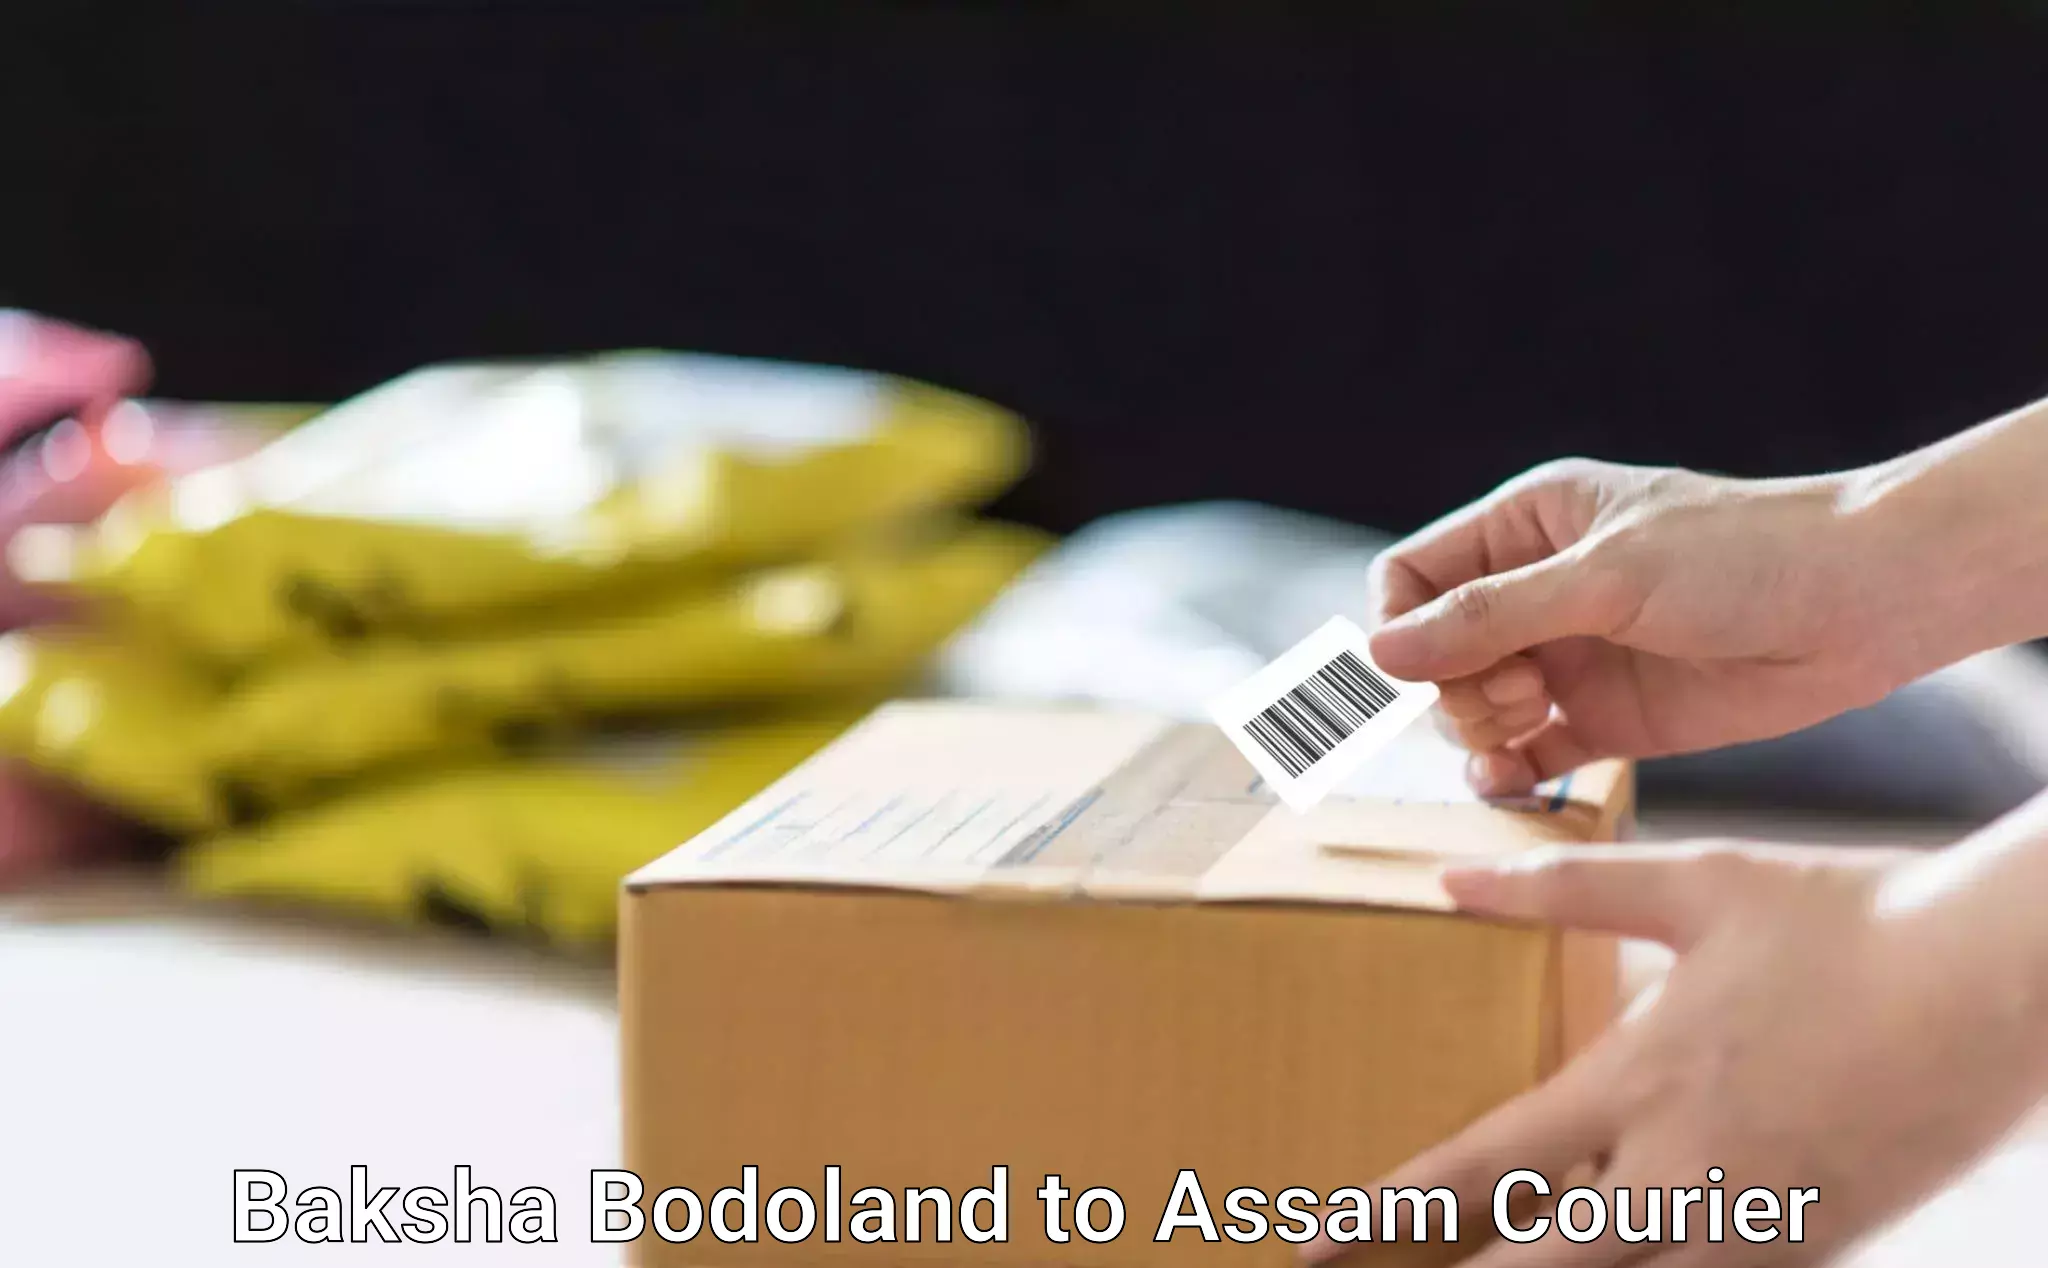 Express package delivery Baksha Bodoland to Assam